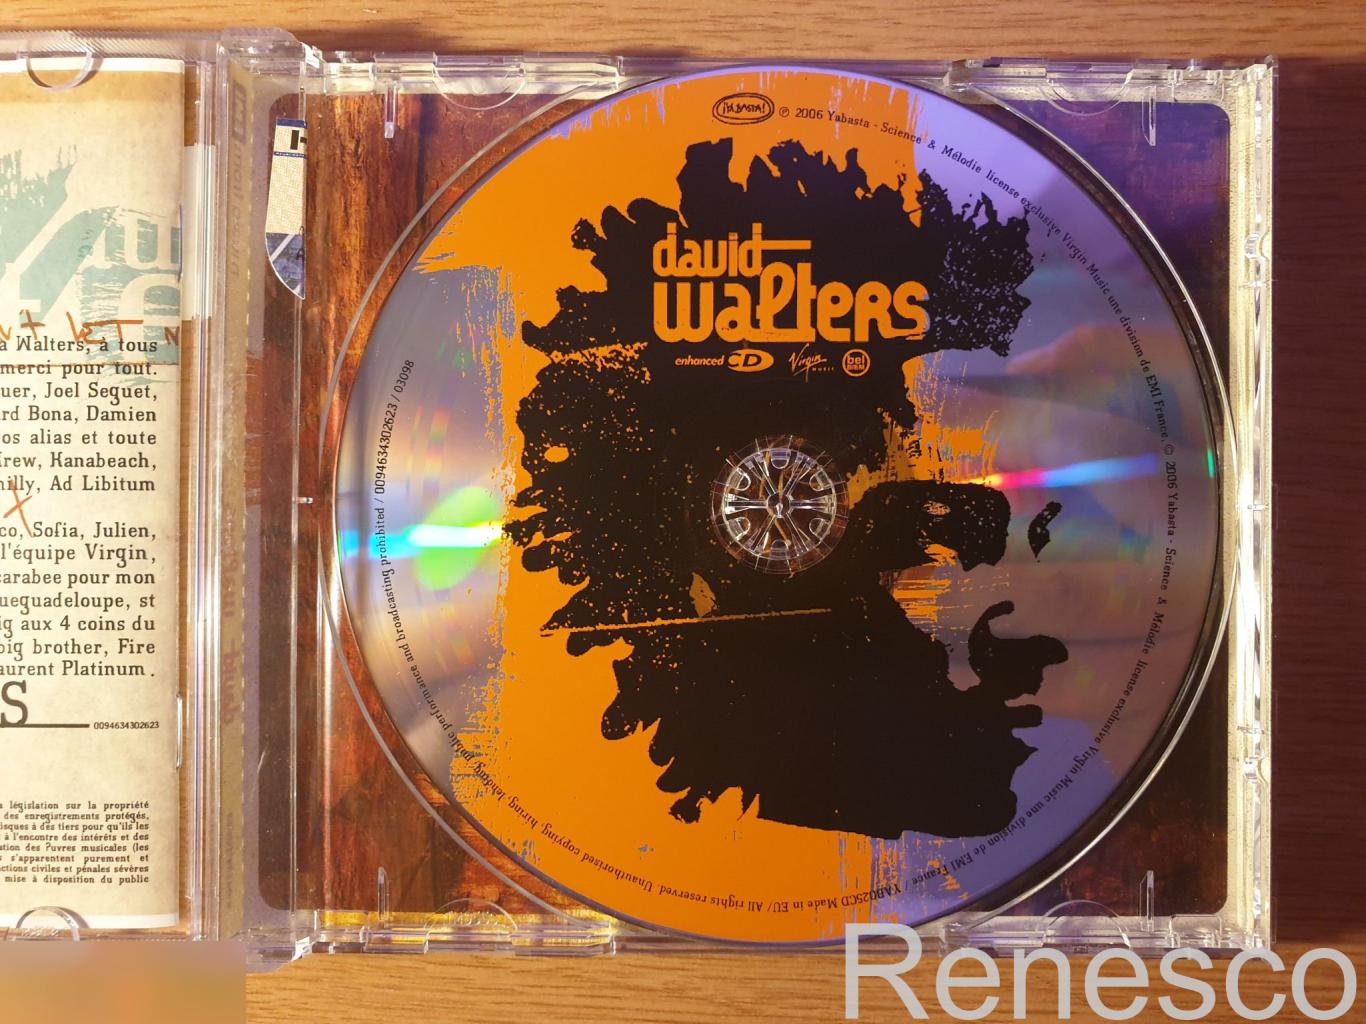 (CD) David Walters ?– Awa (Europe) (2006) 4